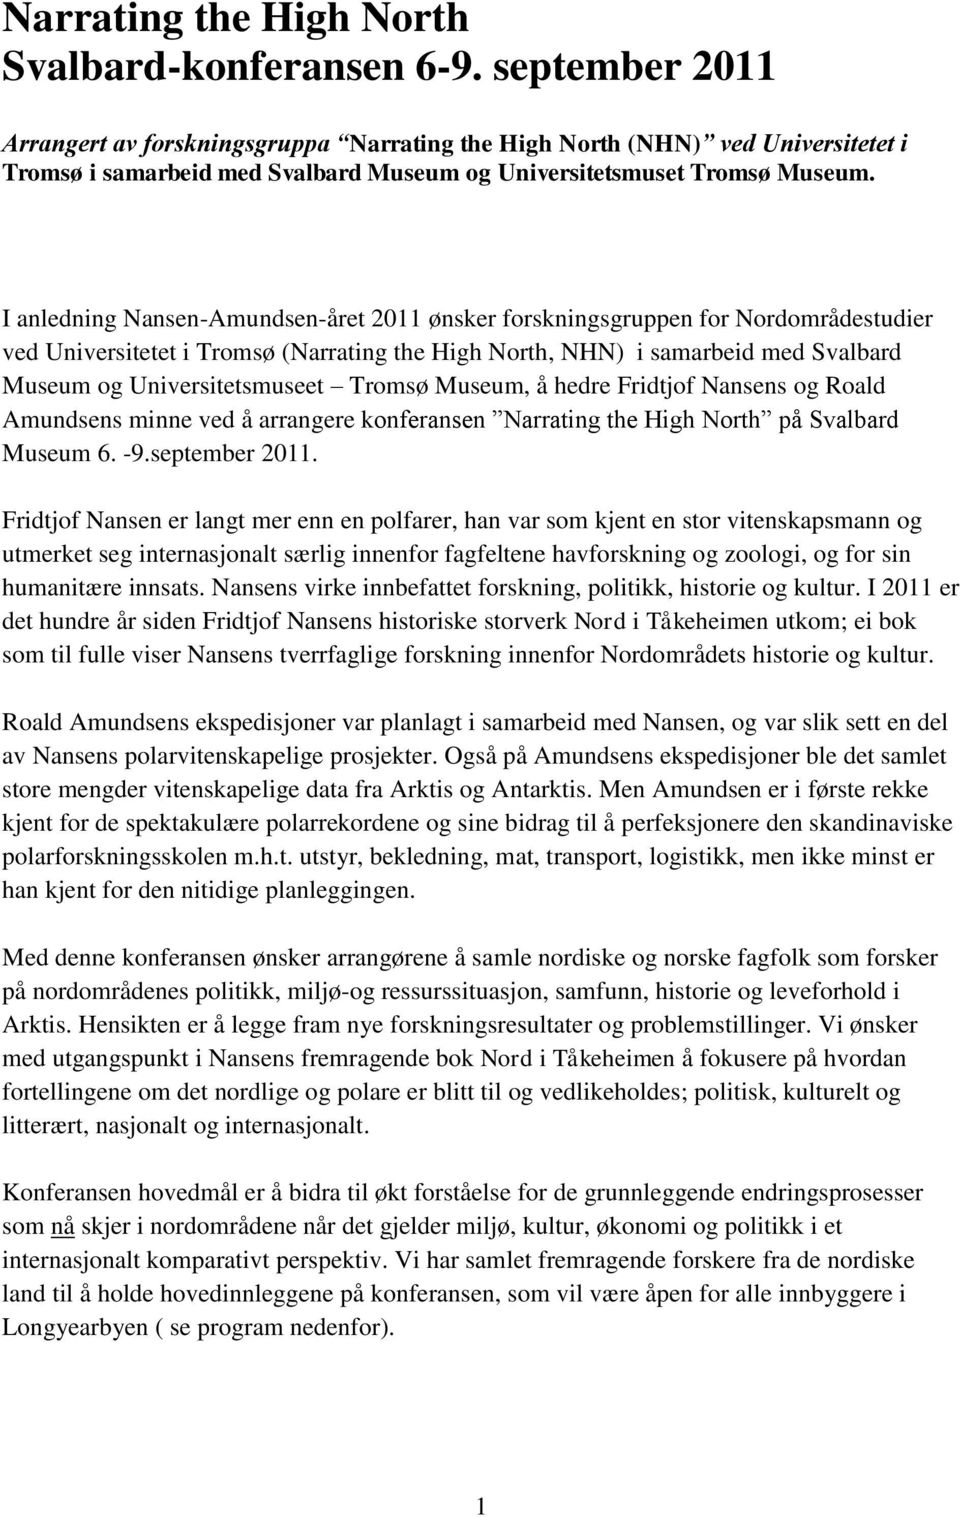 I anledning Nansen-Amundsen-året 2011 ønsker forskningsgruppen for Nordområdestudier ved Universitetet i Tromsø (Narrating the High North, NHN) i samarbeid med Svalbard Museum og Universitetsmuseet